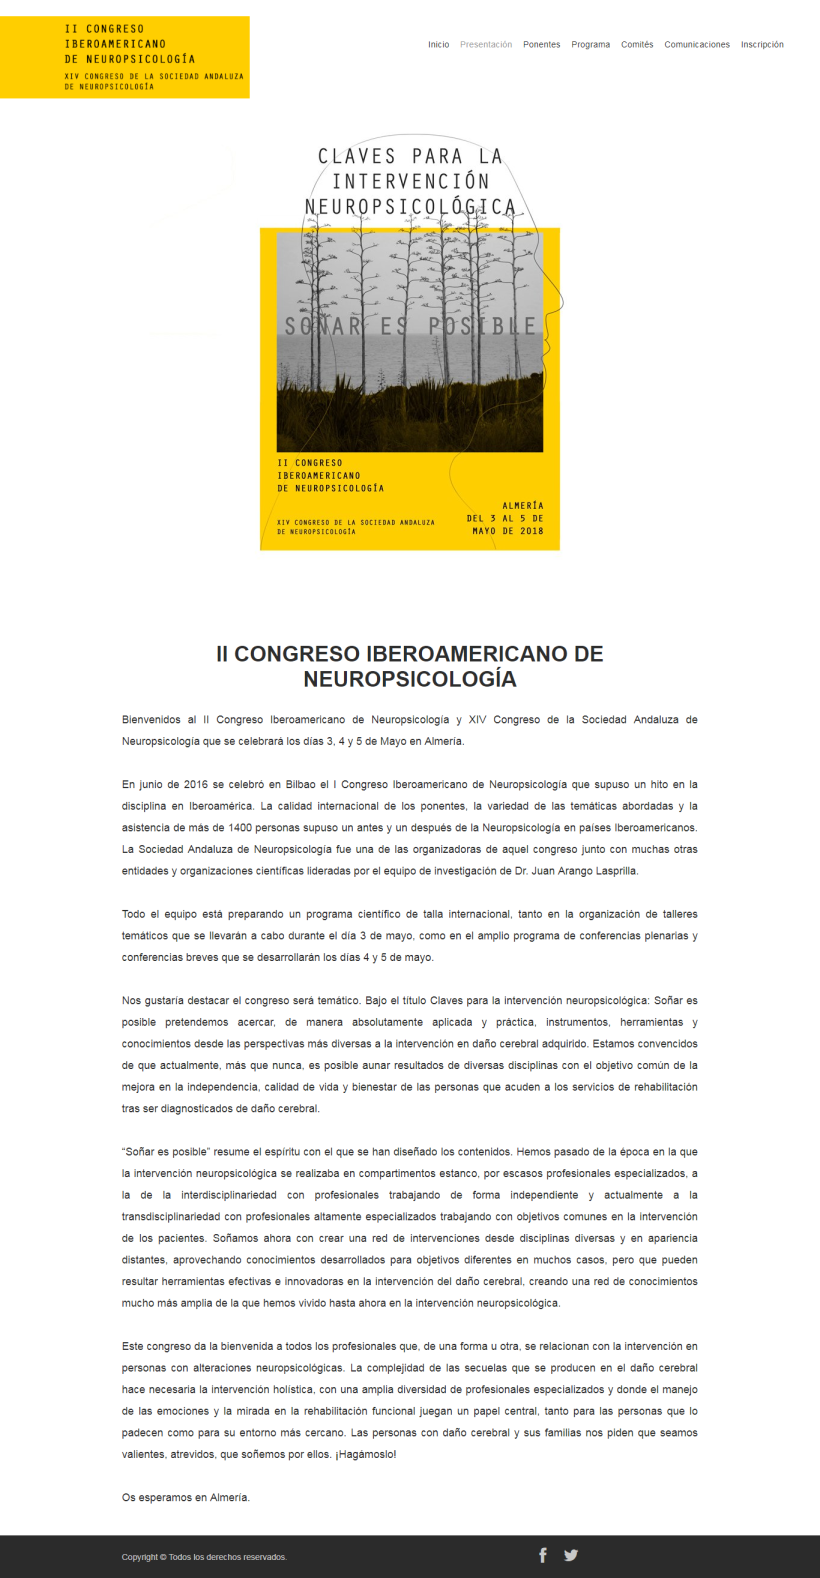 Diseño Gráfico del Congreso Iberoamericano de Neuropsicolgía 3